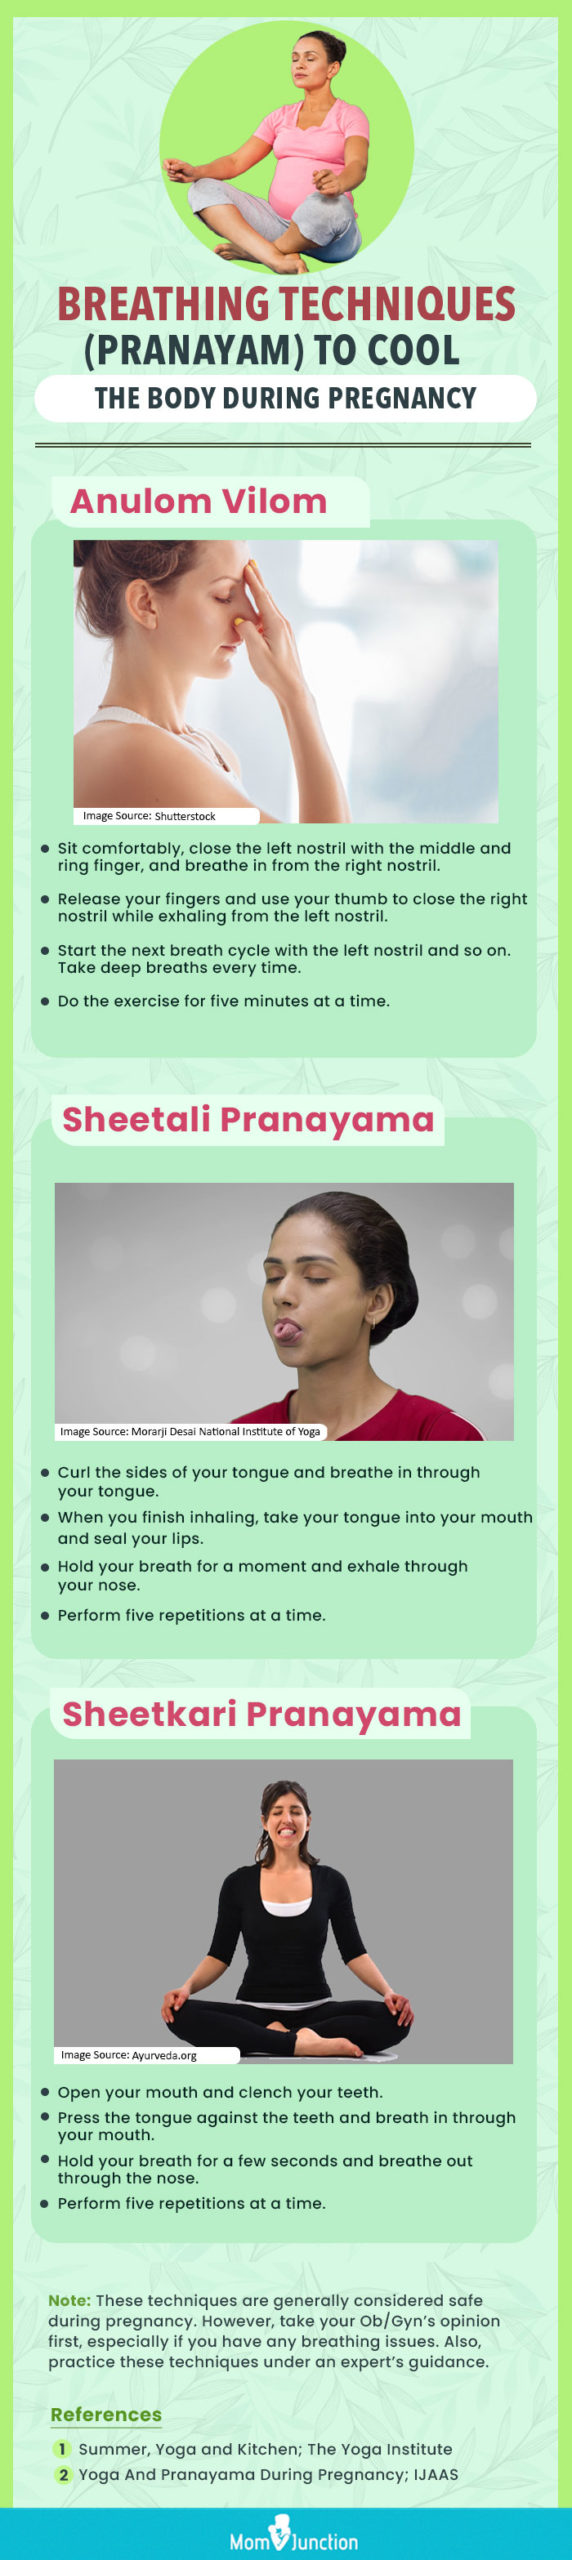 怀孕期间降温的呼吸技巧(Pranayam)(信息图)manbet安卓版